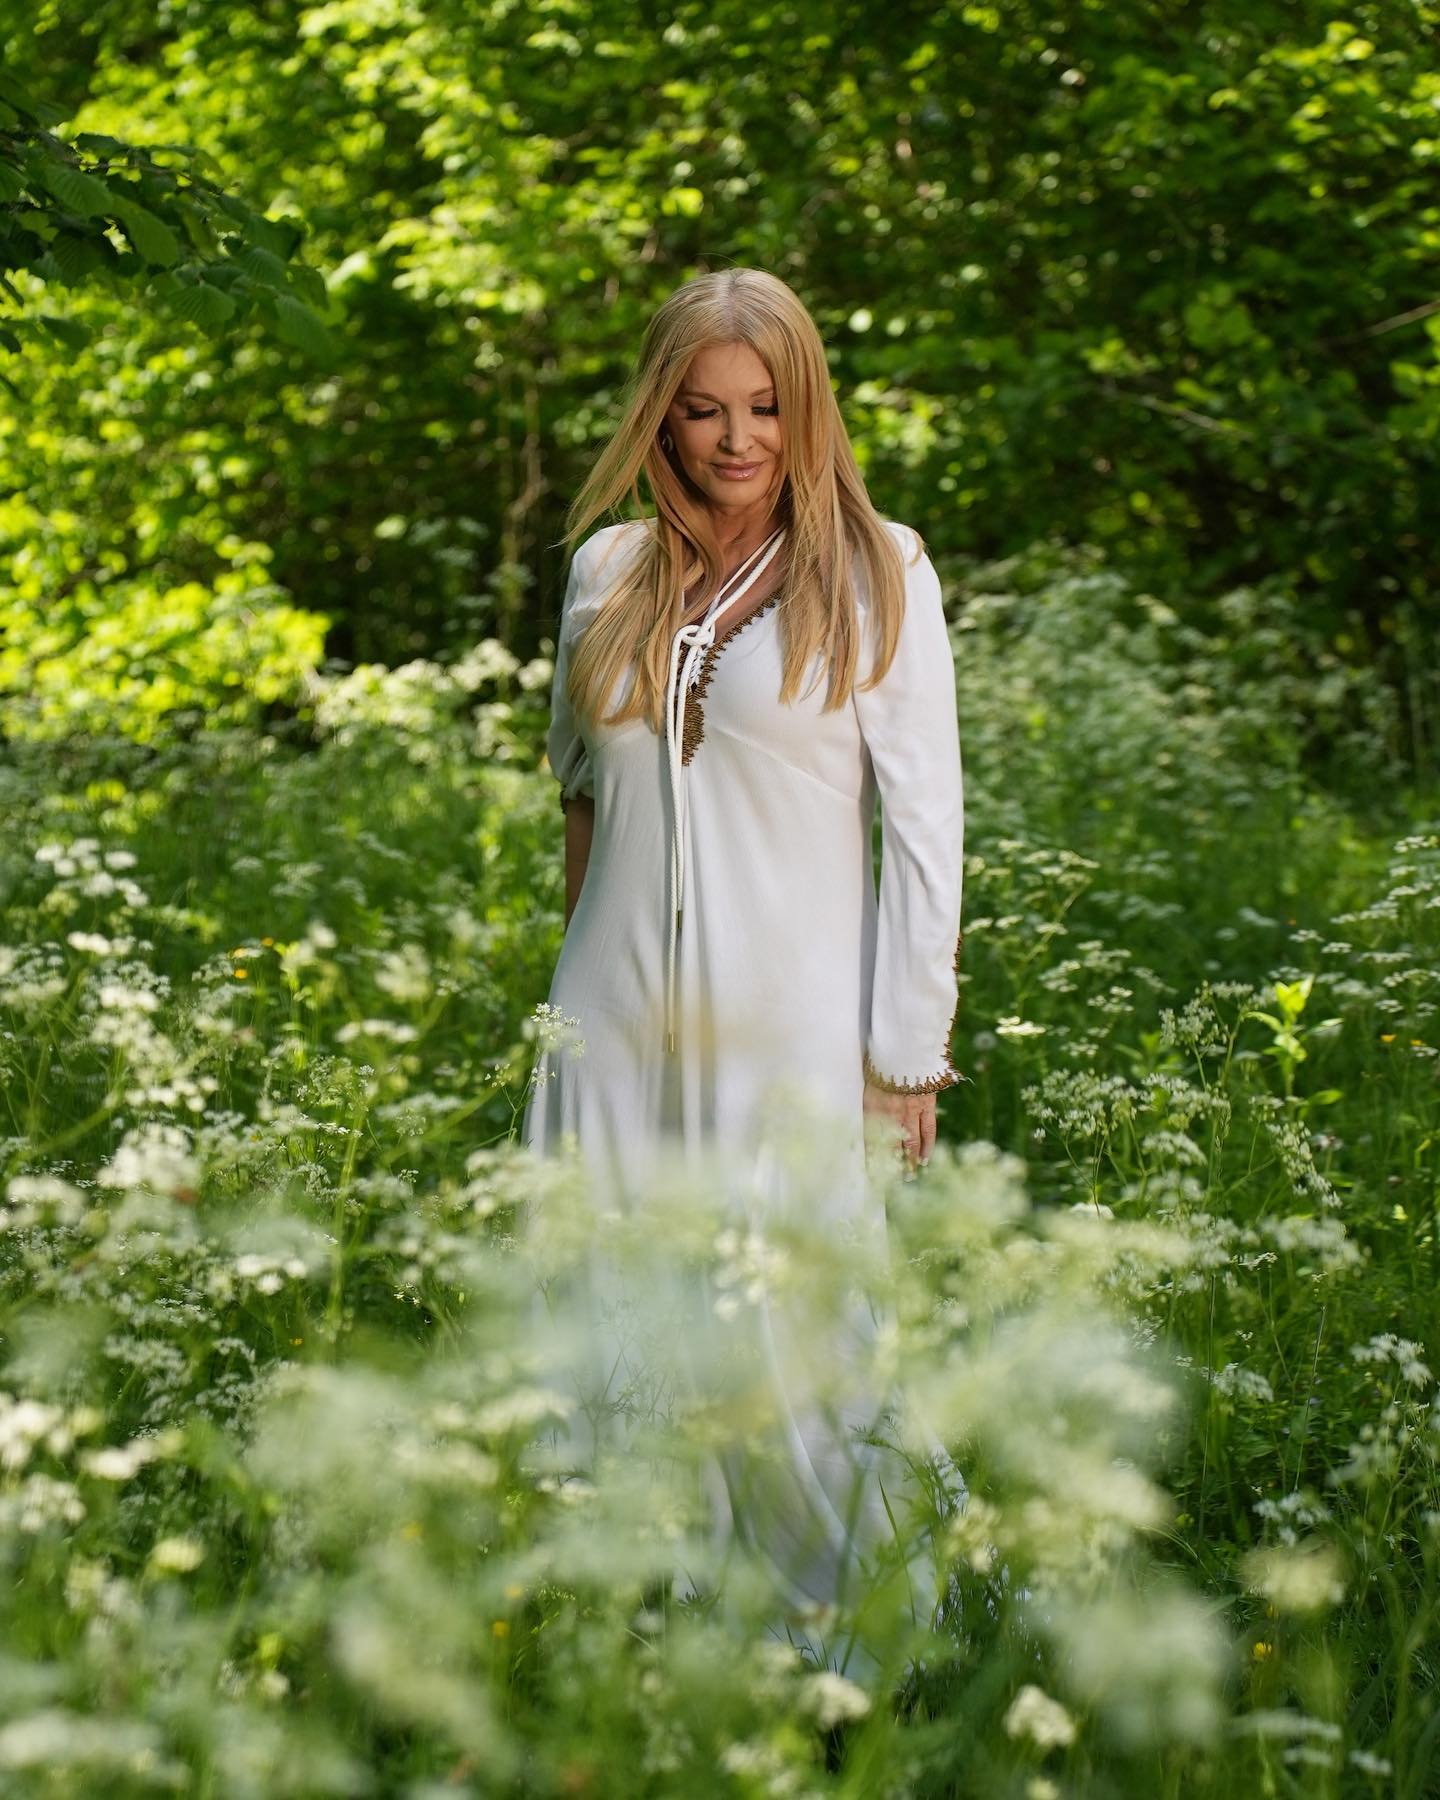 Helena v beli obleki sredi gozda. Vir: Instagram